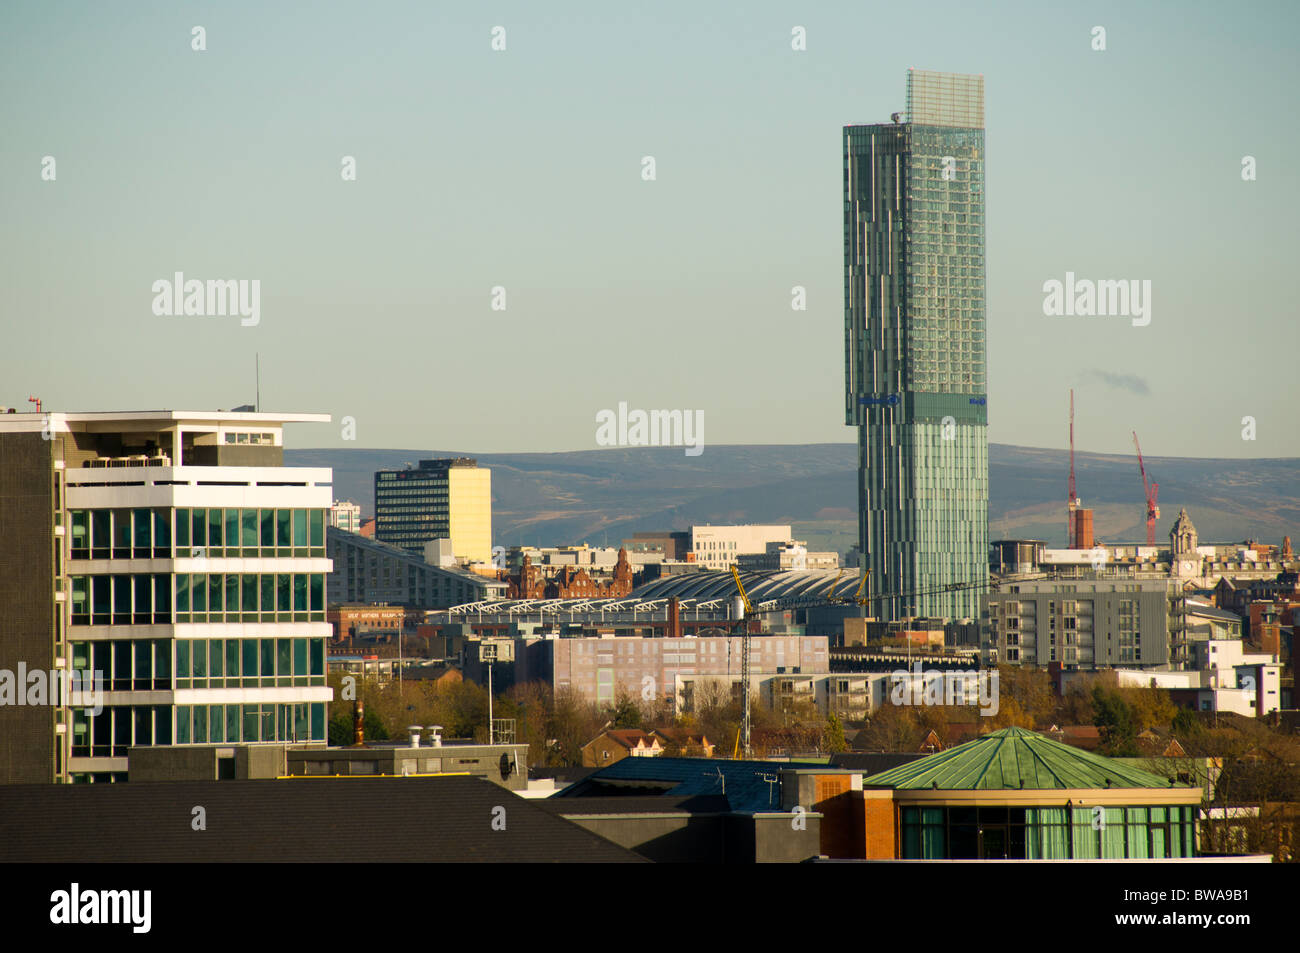 Il Beetham Tower, noto anche come l'Hilton Tower, edificio più alto a Manchester in Inghilterra, Regno Unito. Pennine colline dietro. Foto Stock